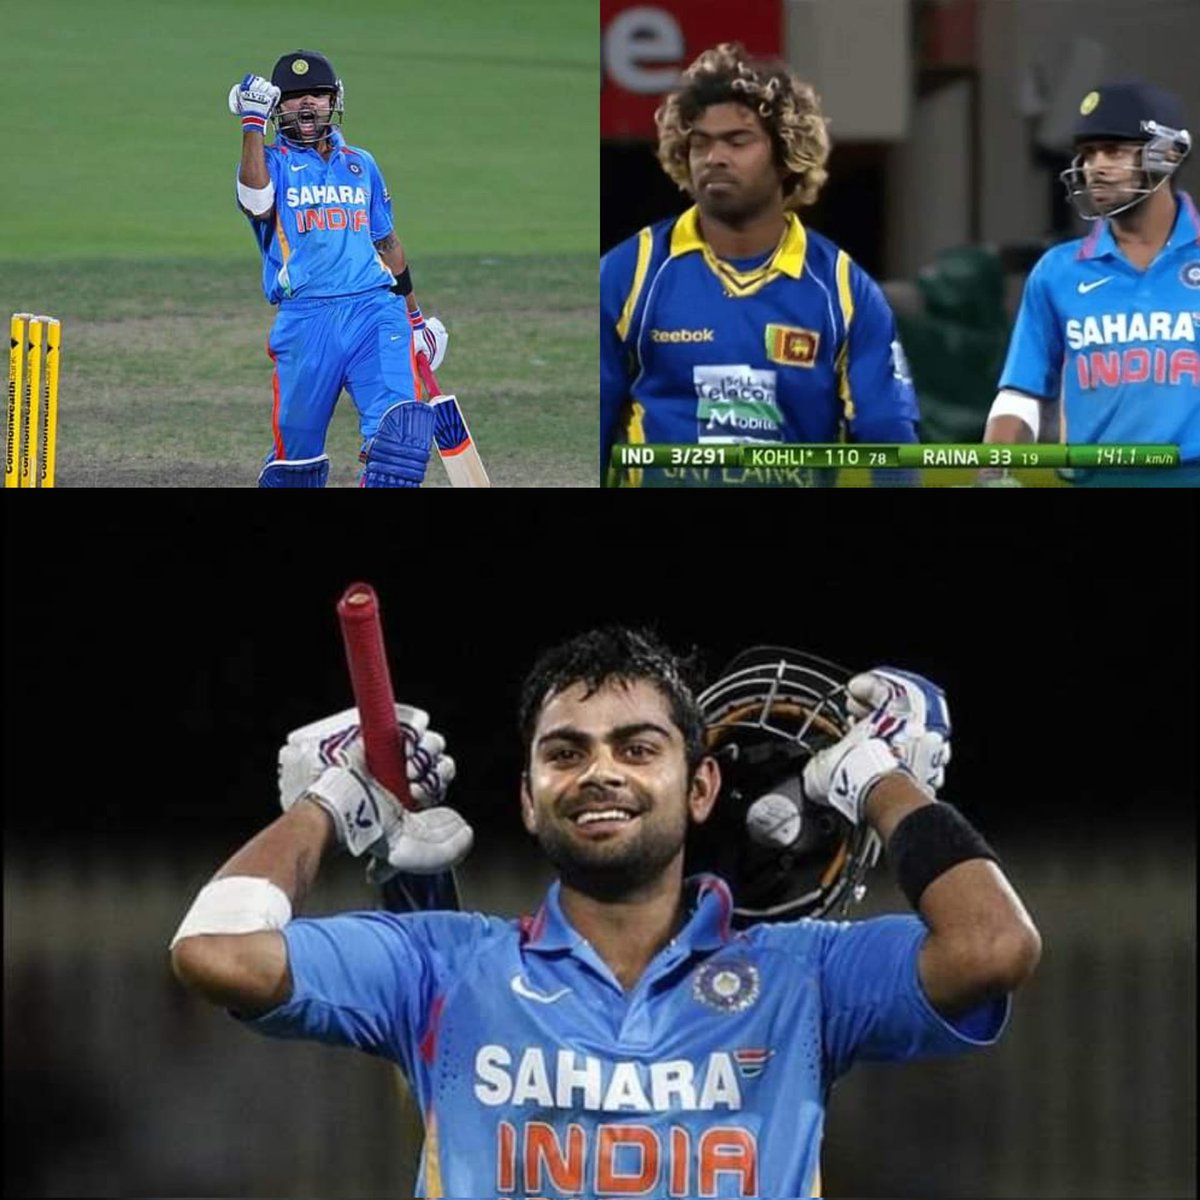 #OnThisDay in 2012 @imVkohli Scored 133* v SL & India chased 321 runs in 36.4 overs😯 Kohli against Malinga in this match 4 4 1 0 1 1 2 6 4 4 4 4 1 4 4 Most runs vs Malinga in an ODI match 44 - V Kohli (293 SR, 2012)* 41 - M Hafeez (152 SR, 2013) 38 - Kl Rahul (109 SR, 2019)